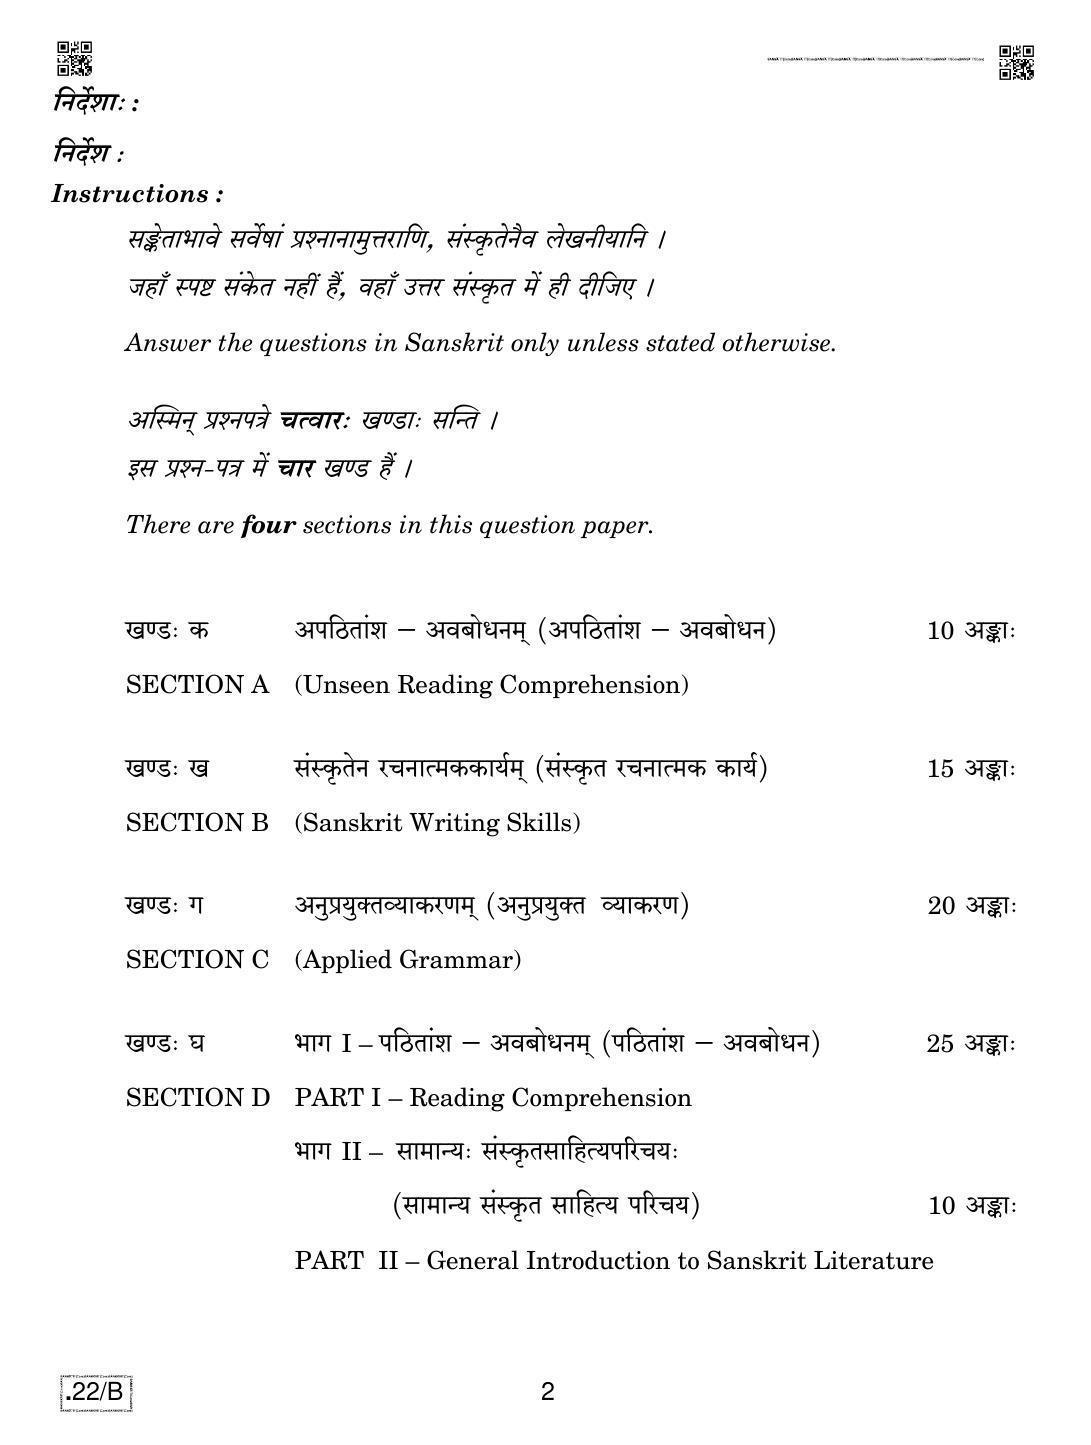 CBSE Class 12 Sanskrit Core 2020 Compartment Question Paper - Page 2